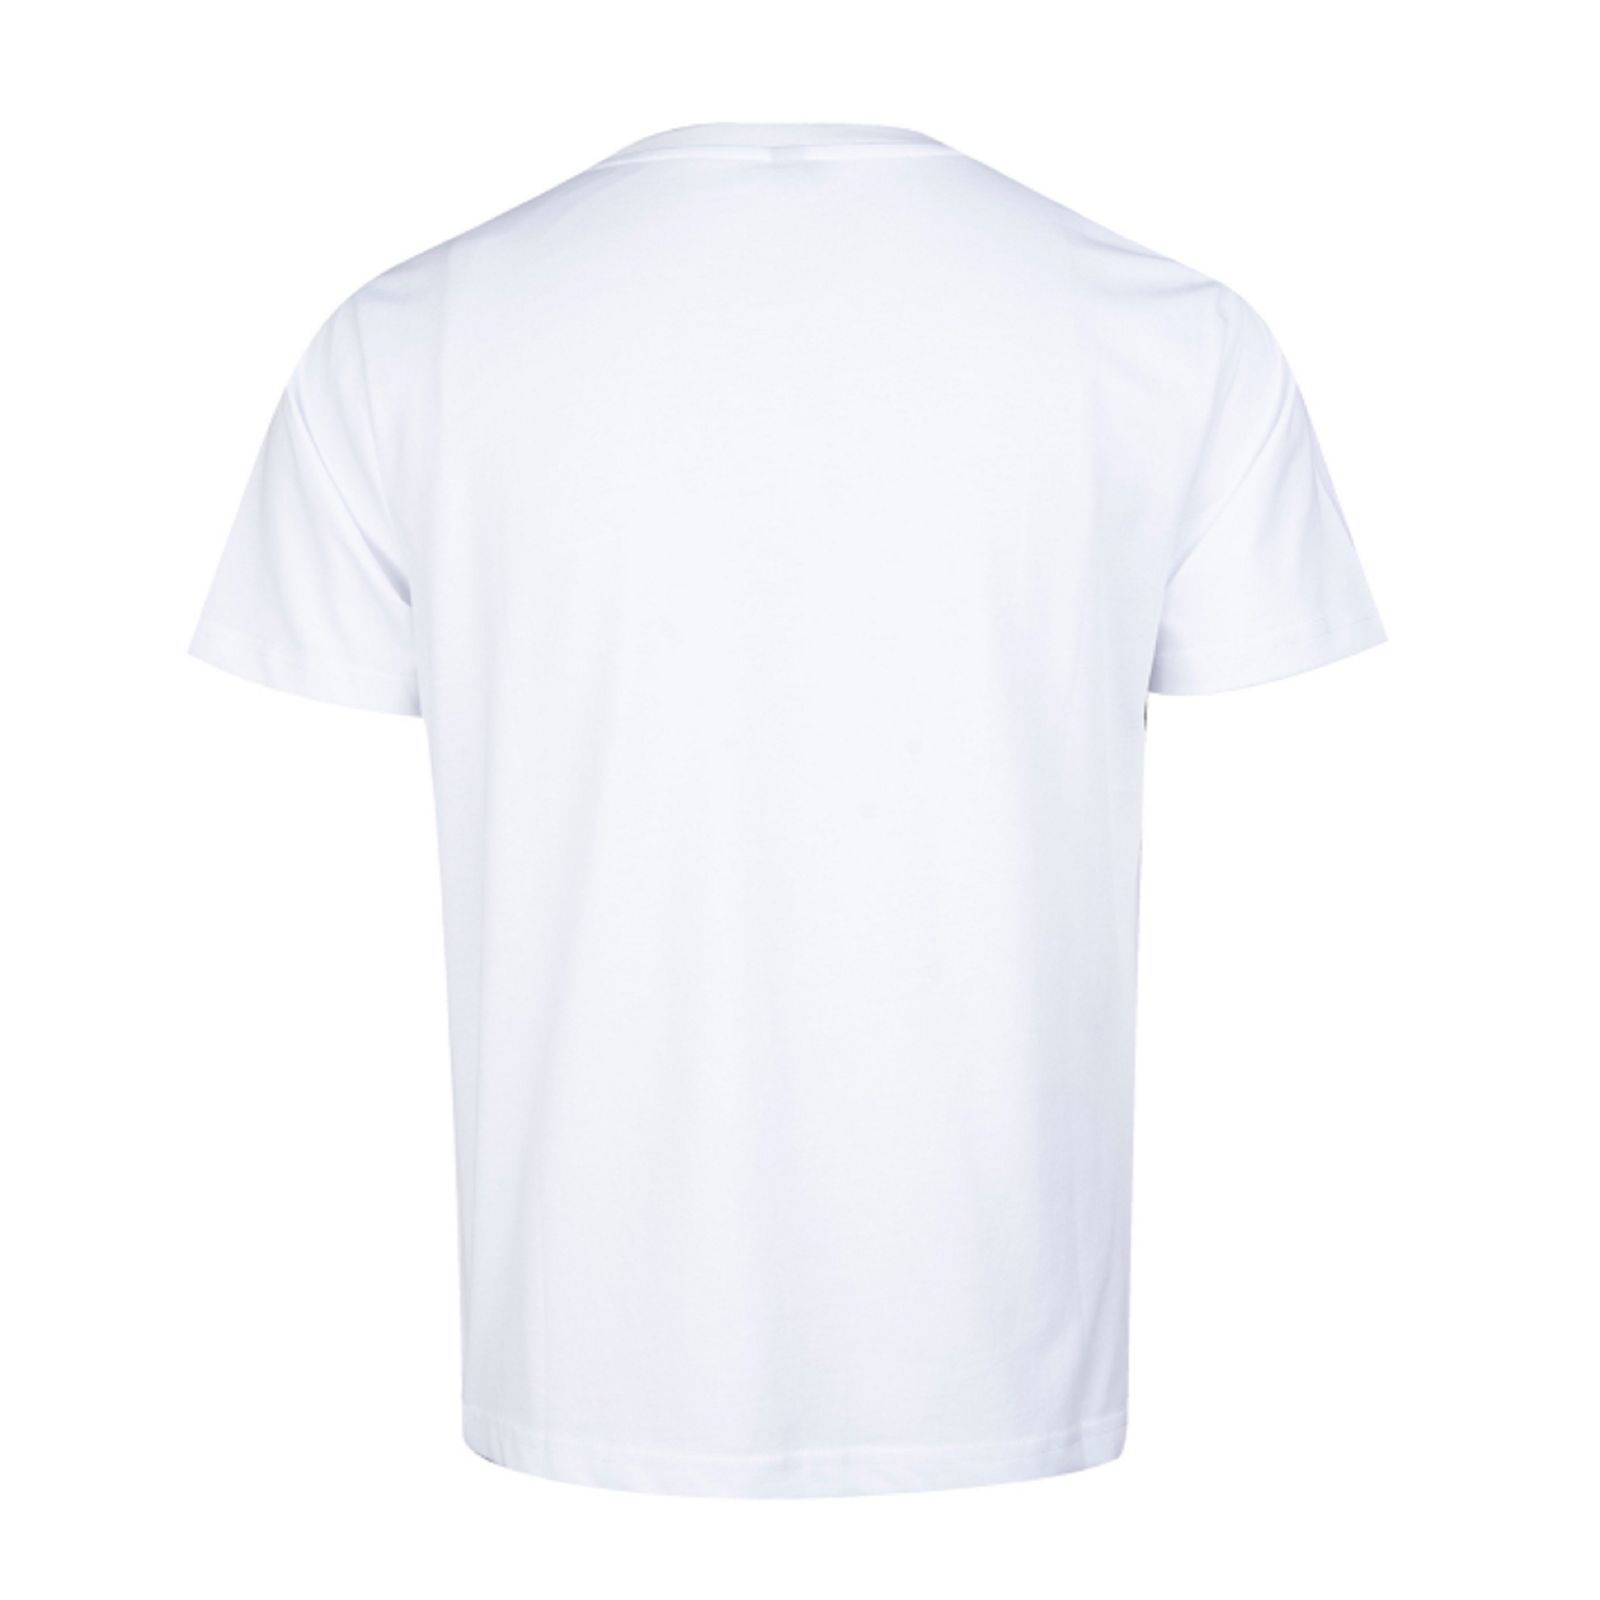 تی شرت آستین کوتاه مردانه جین وست مدل یقه گرد کد 1551251 رنگ سفید -  - 3